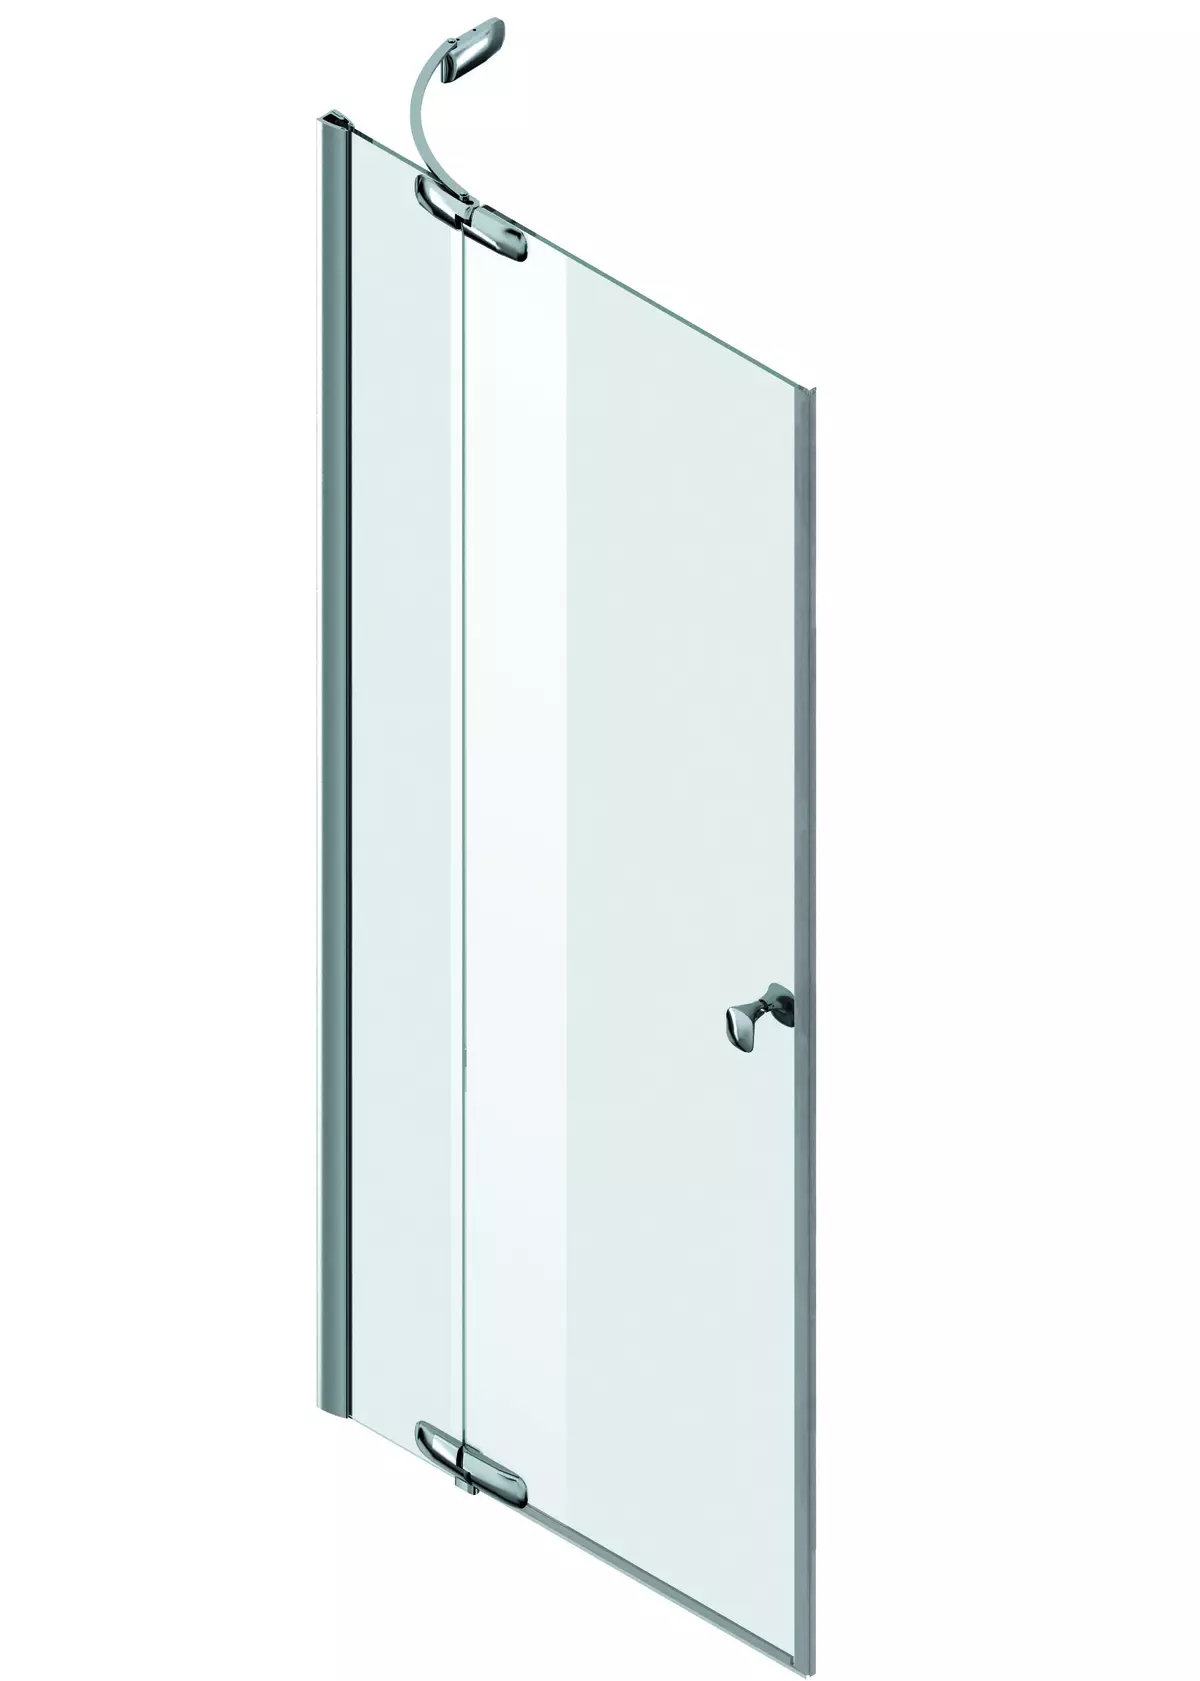 Dveře ve sprše: skládací úhlové, dveře 110-120 cm a 130-170 cm, další rozměry. Modely z Německa a Itálie, z polykarbonátových a dveřních kupé 21396_53